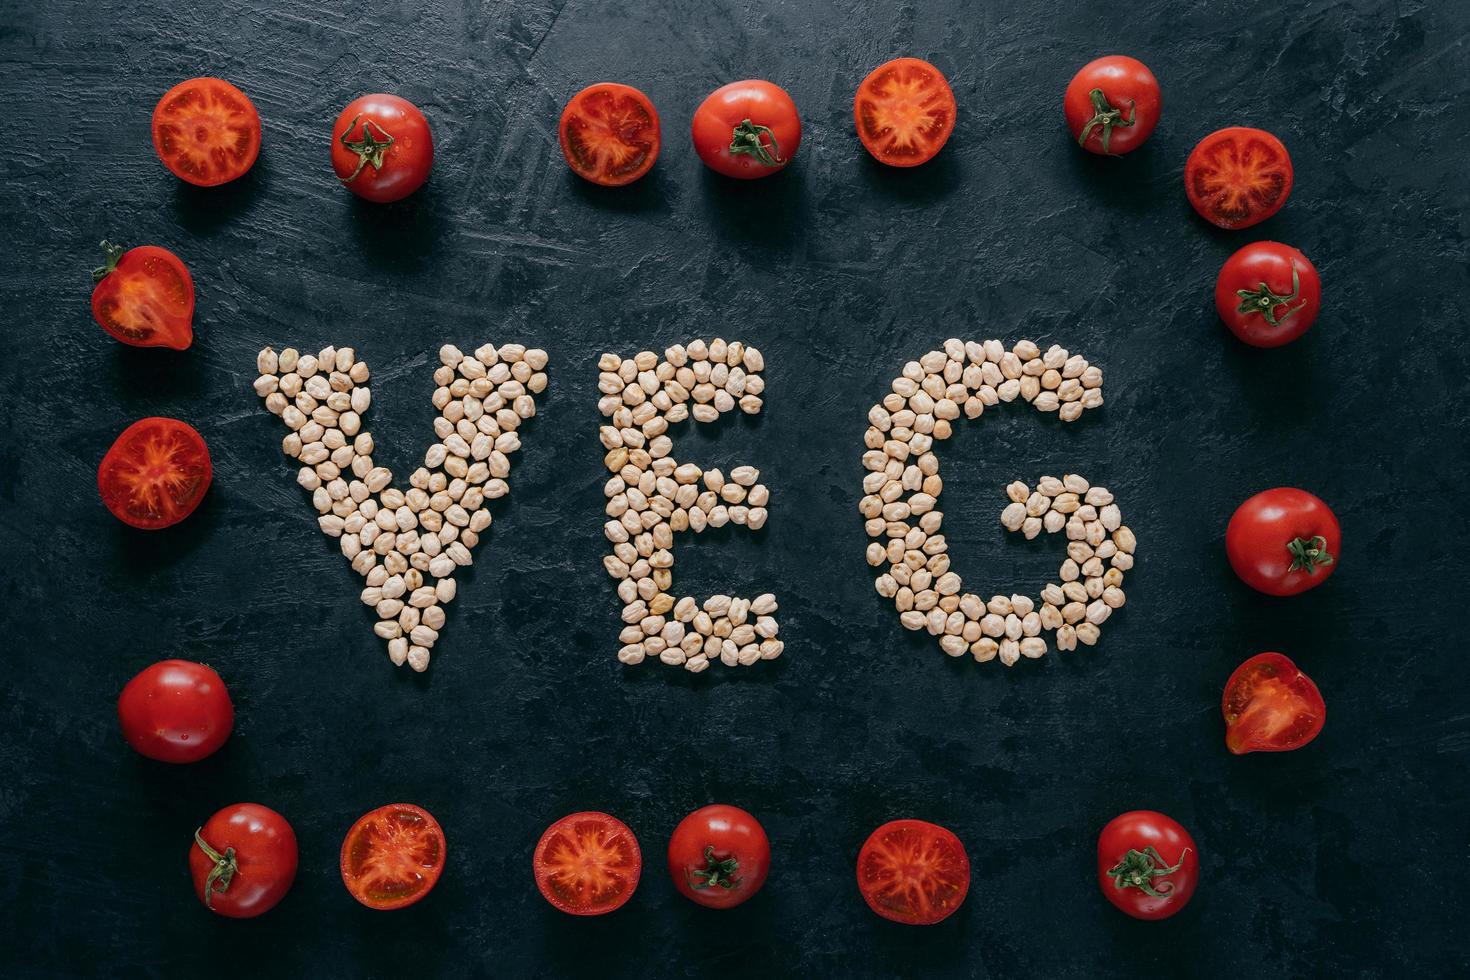 Lebensmittel- und Ernährungskonzept. horizontale Aufnahme von trockenem Kichererbsen in Form von Buchstabengemüse, die Produkte für Veganer bezeichnet. Tomatenrahmen herum foto